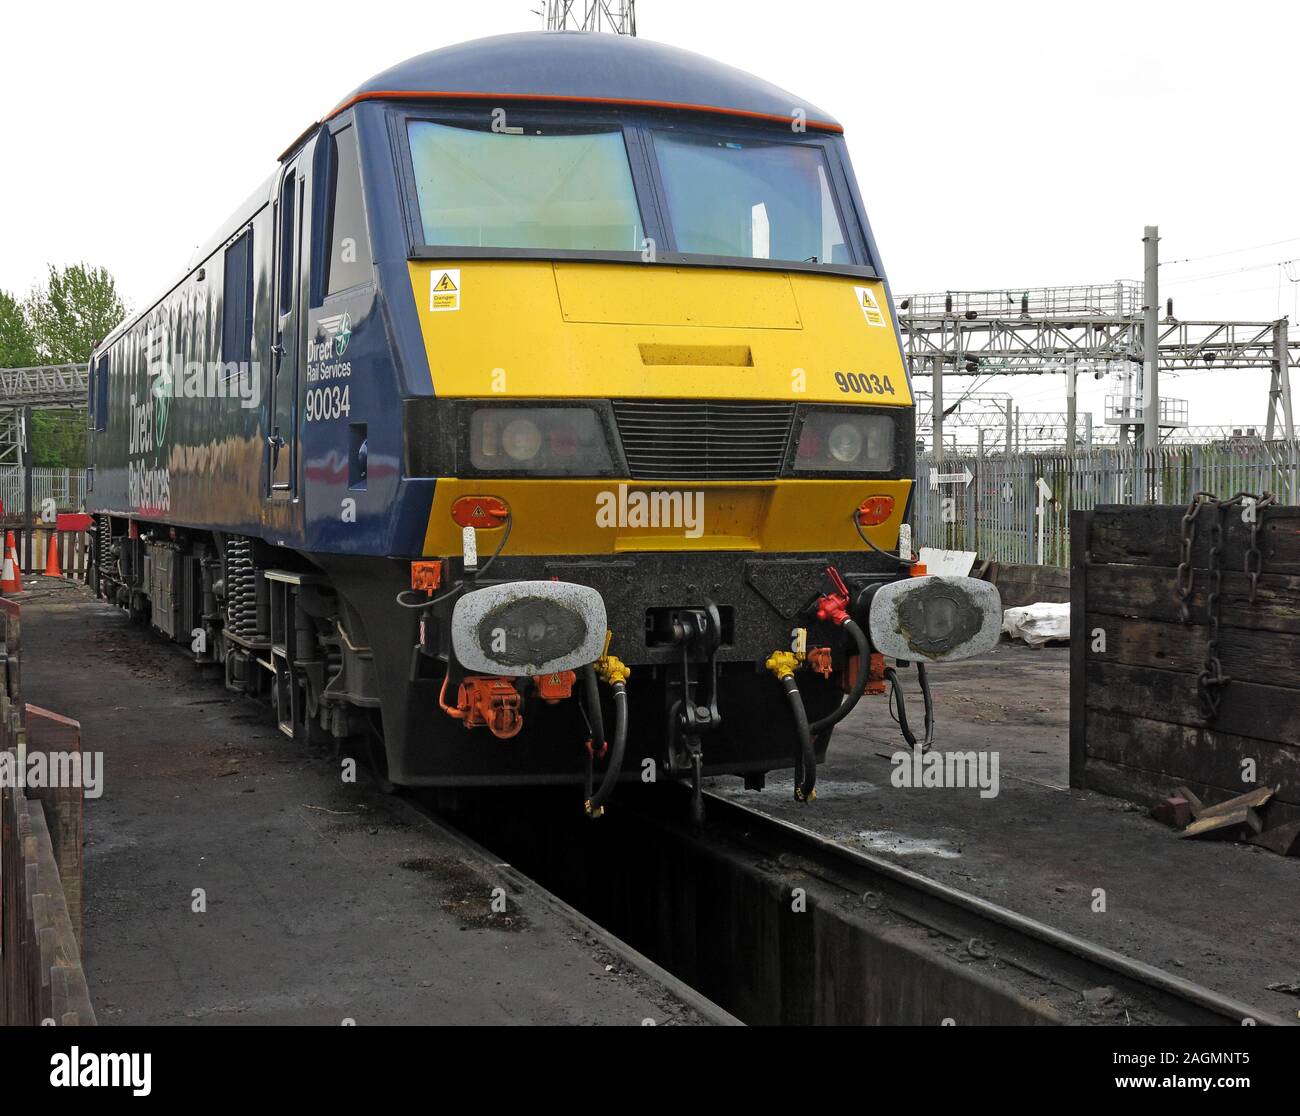 90034 Direct Rail Services Locomotive, classe 90, dépôt Crewe, Cheshire, Angleterre, Royaume-Uni Banque D'Images